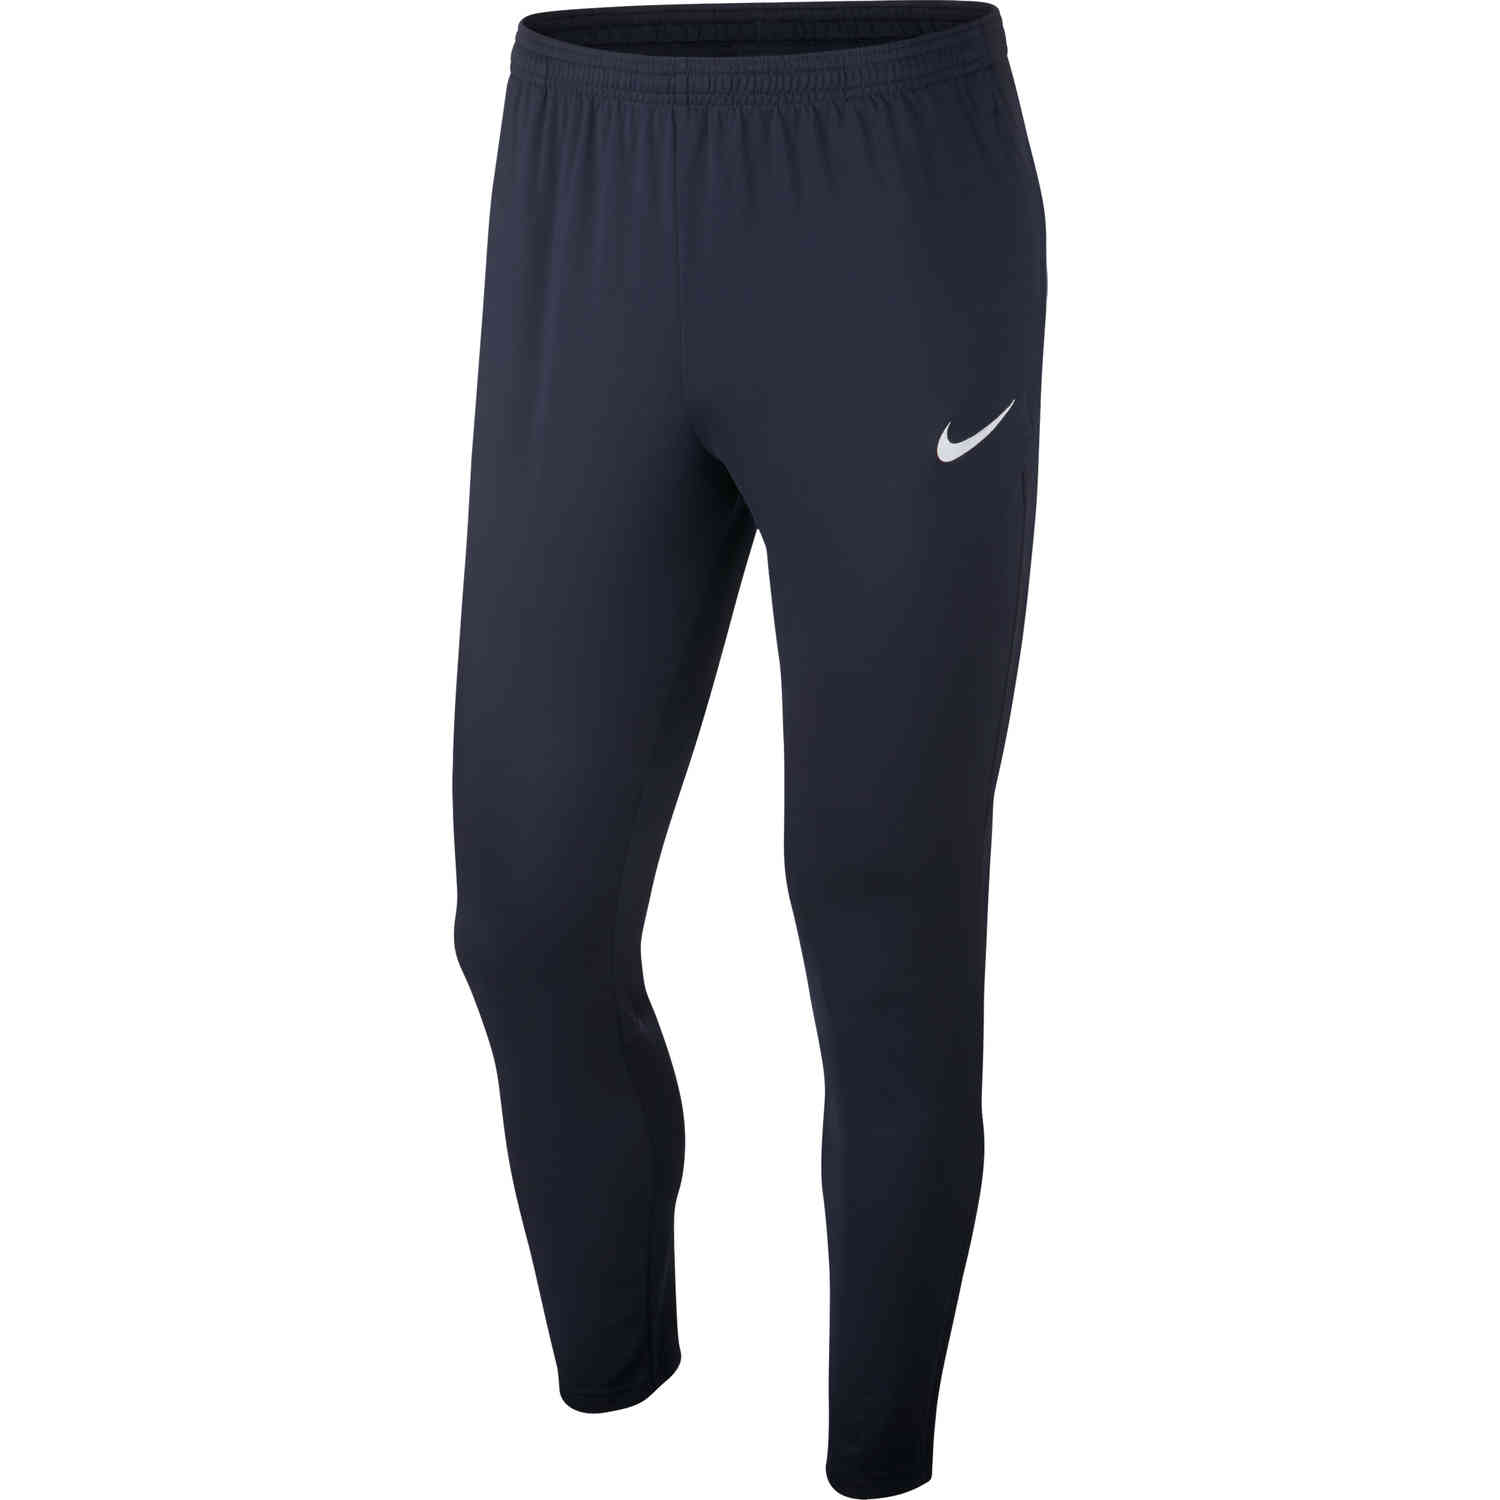 Nike Academy18 Training Pants - Obsidian - SoccerPro